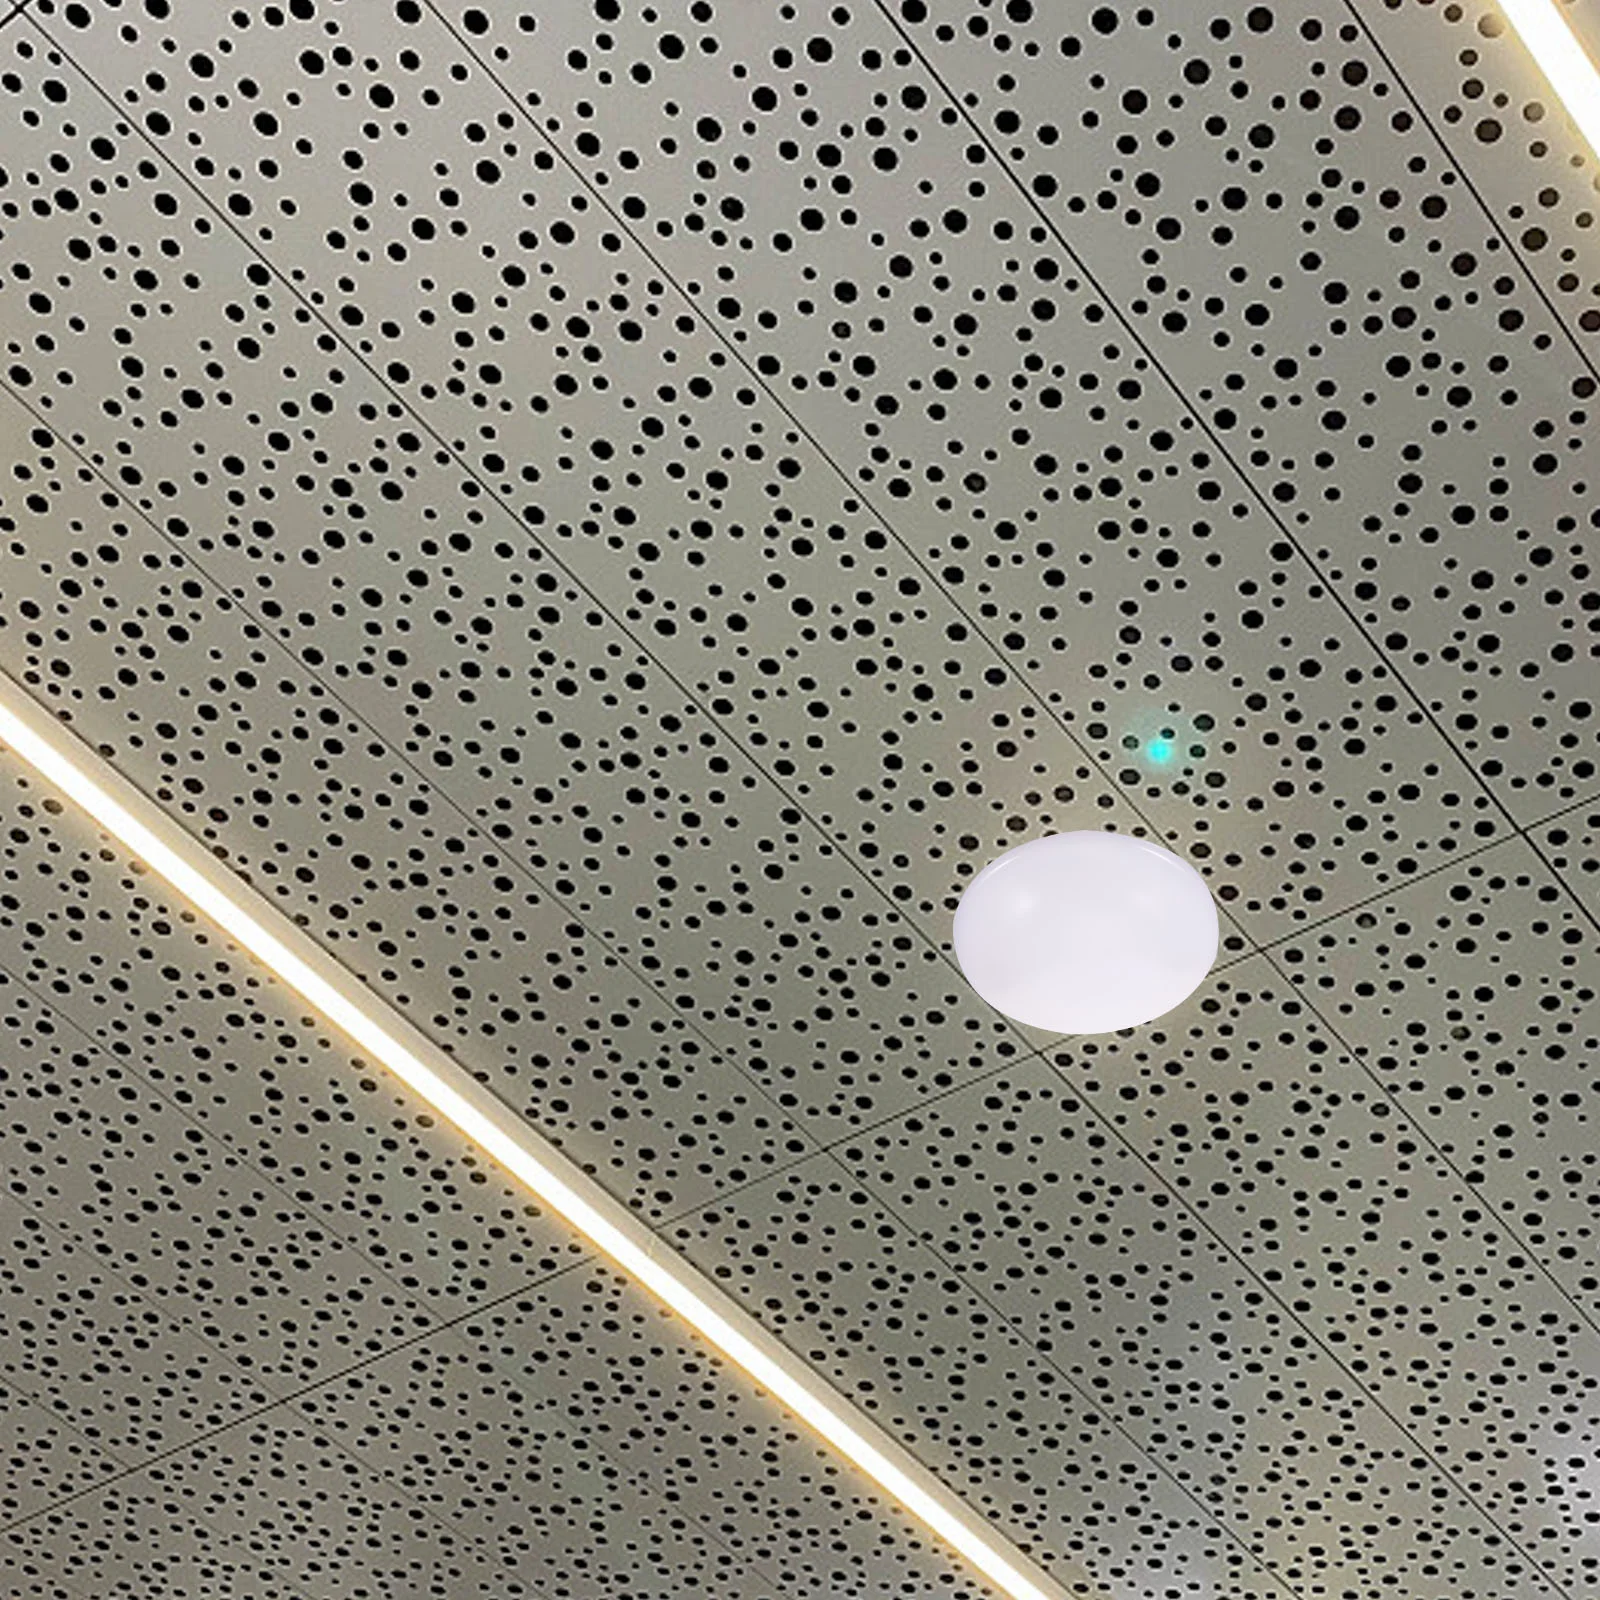 

Светильник крышка светильника потолочные покрытия освещение класс абажур Замена офисное покрытие фильтры фитинги потолки